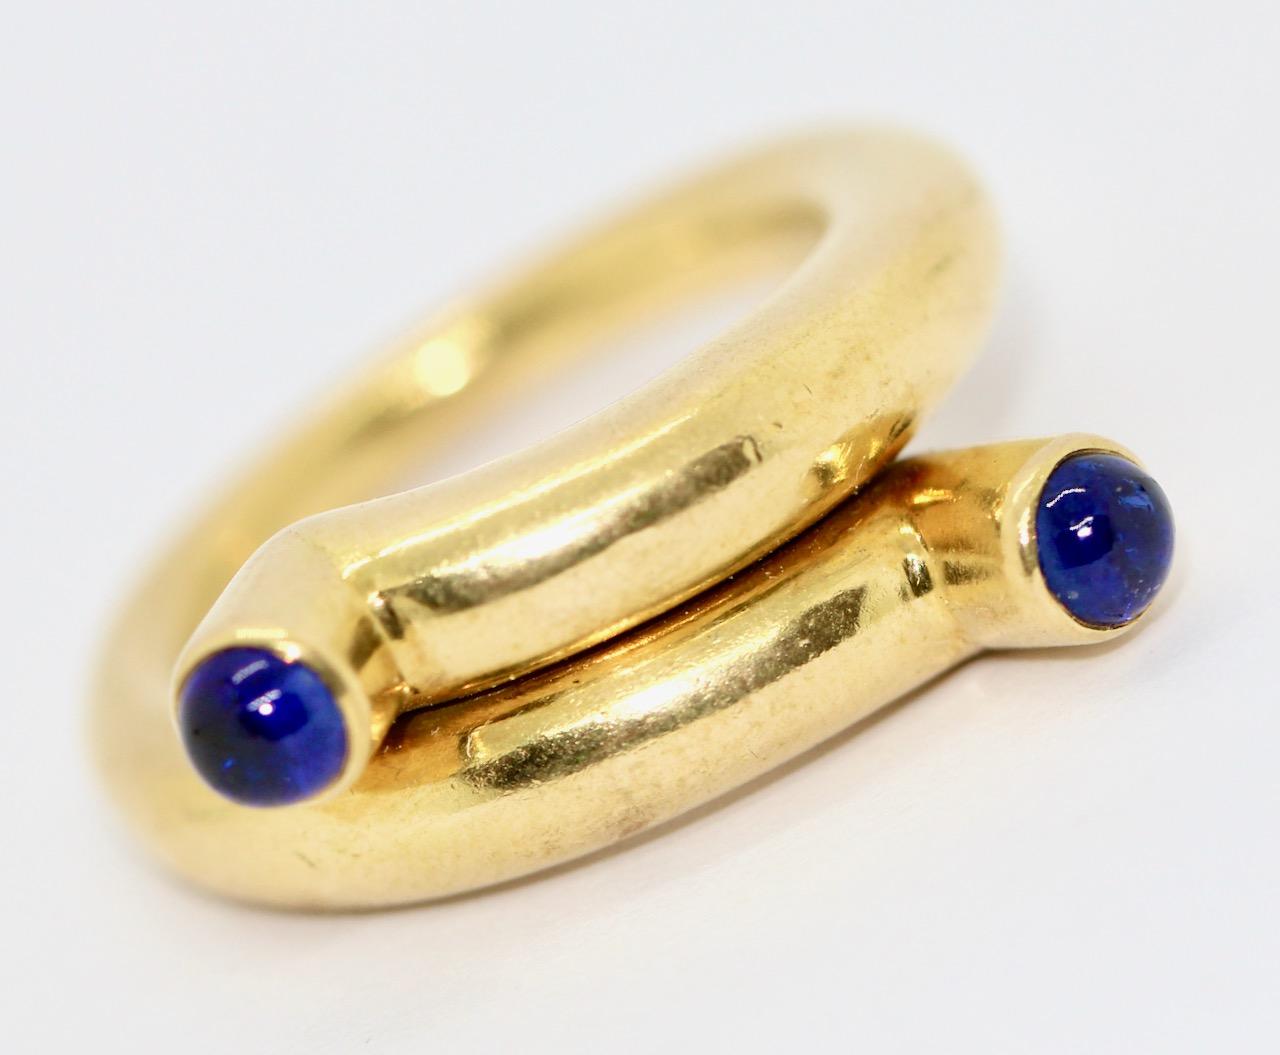 Designer-Ring von Tiffany & Co, Jean Schlumberger, 18 Karat Gold mit Saphir-Cabochons.

Inklusive Echtheitszertifikat.